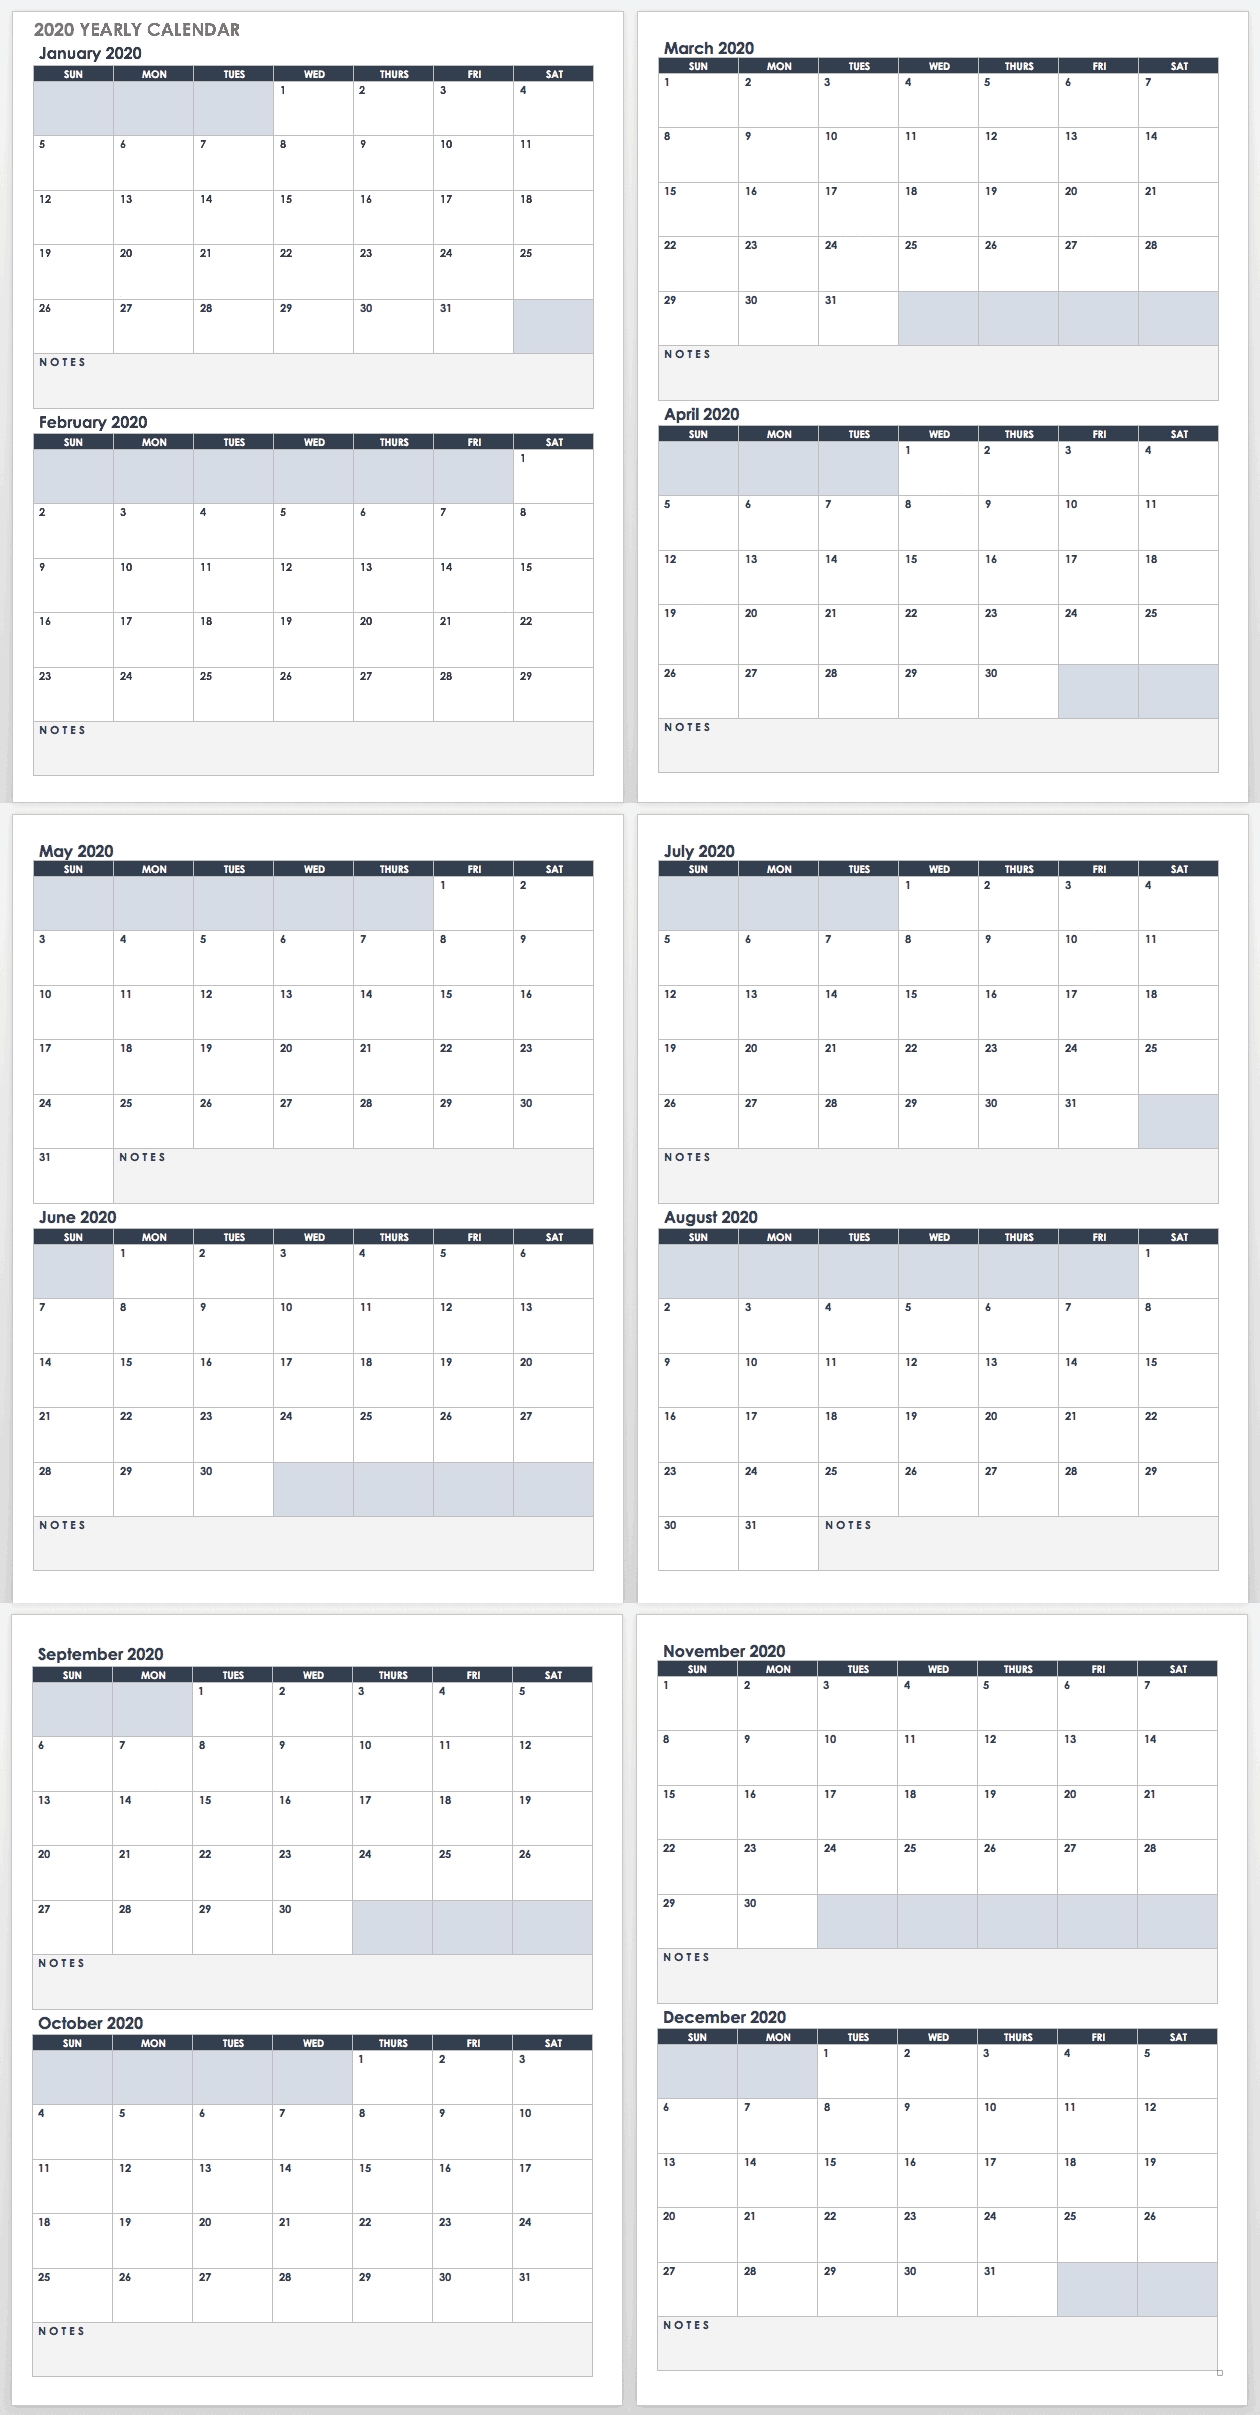 2020 Employee Attendance Calendar Free | Calendar For Planning within Free 2020 Employee Attendance Calendar